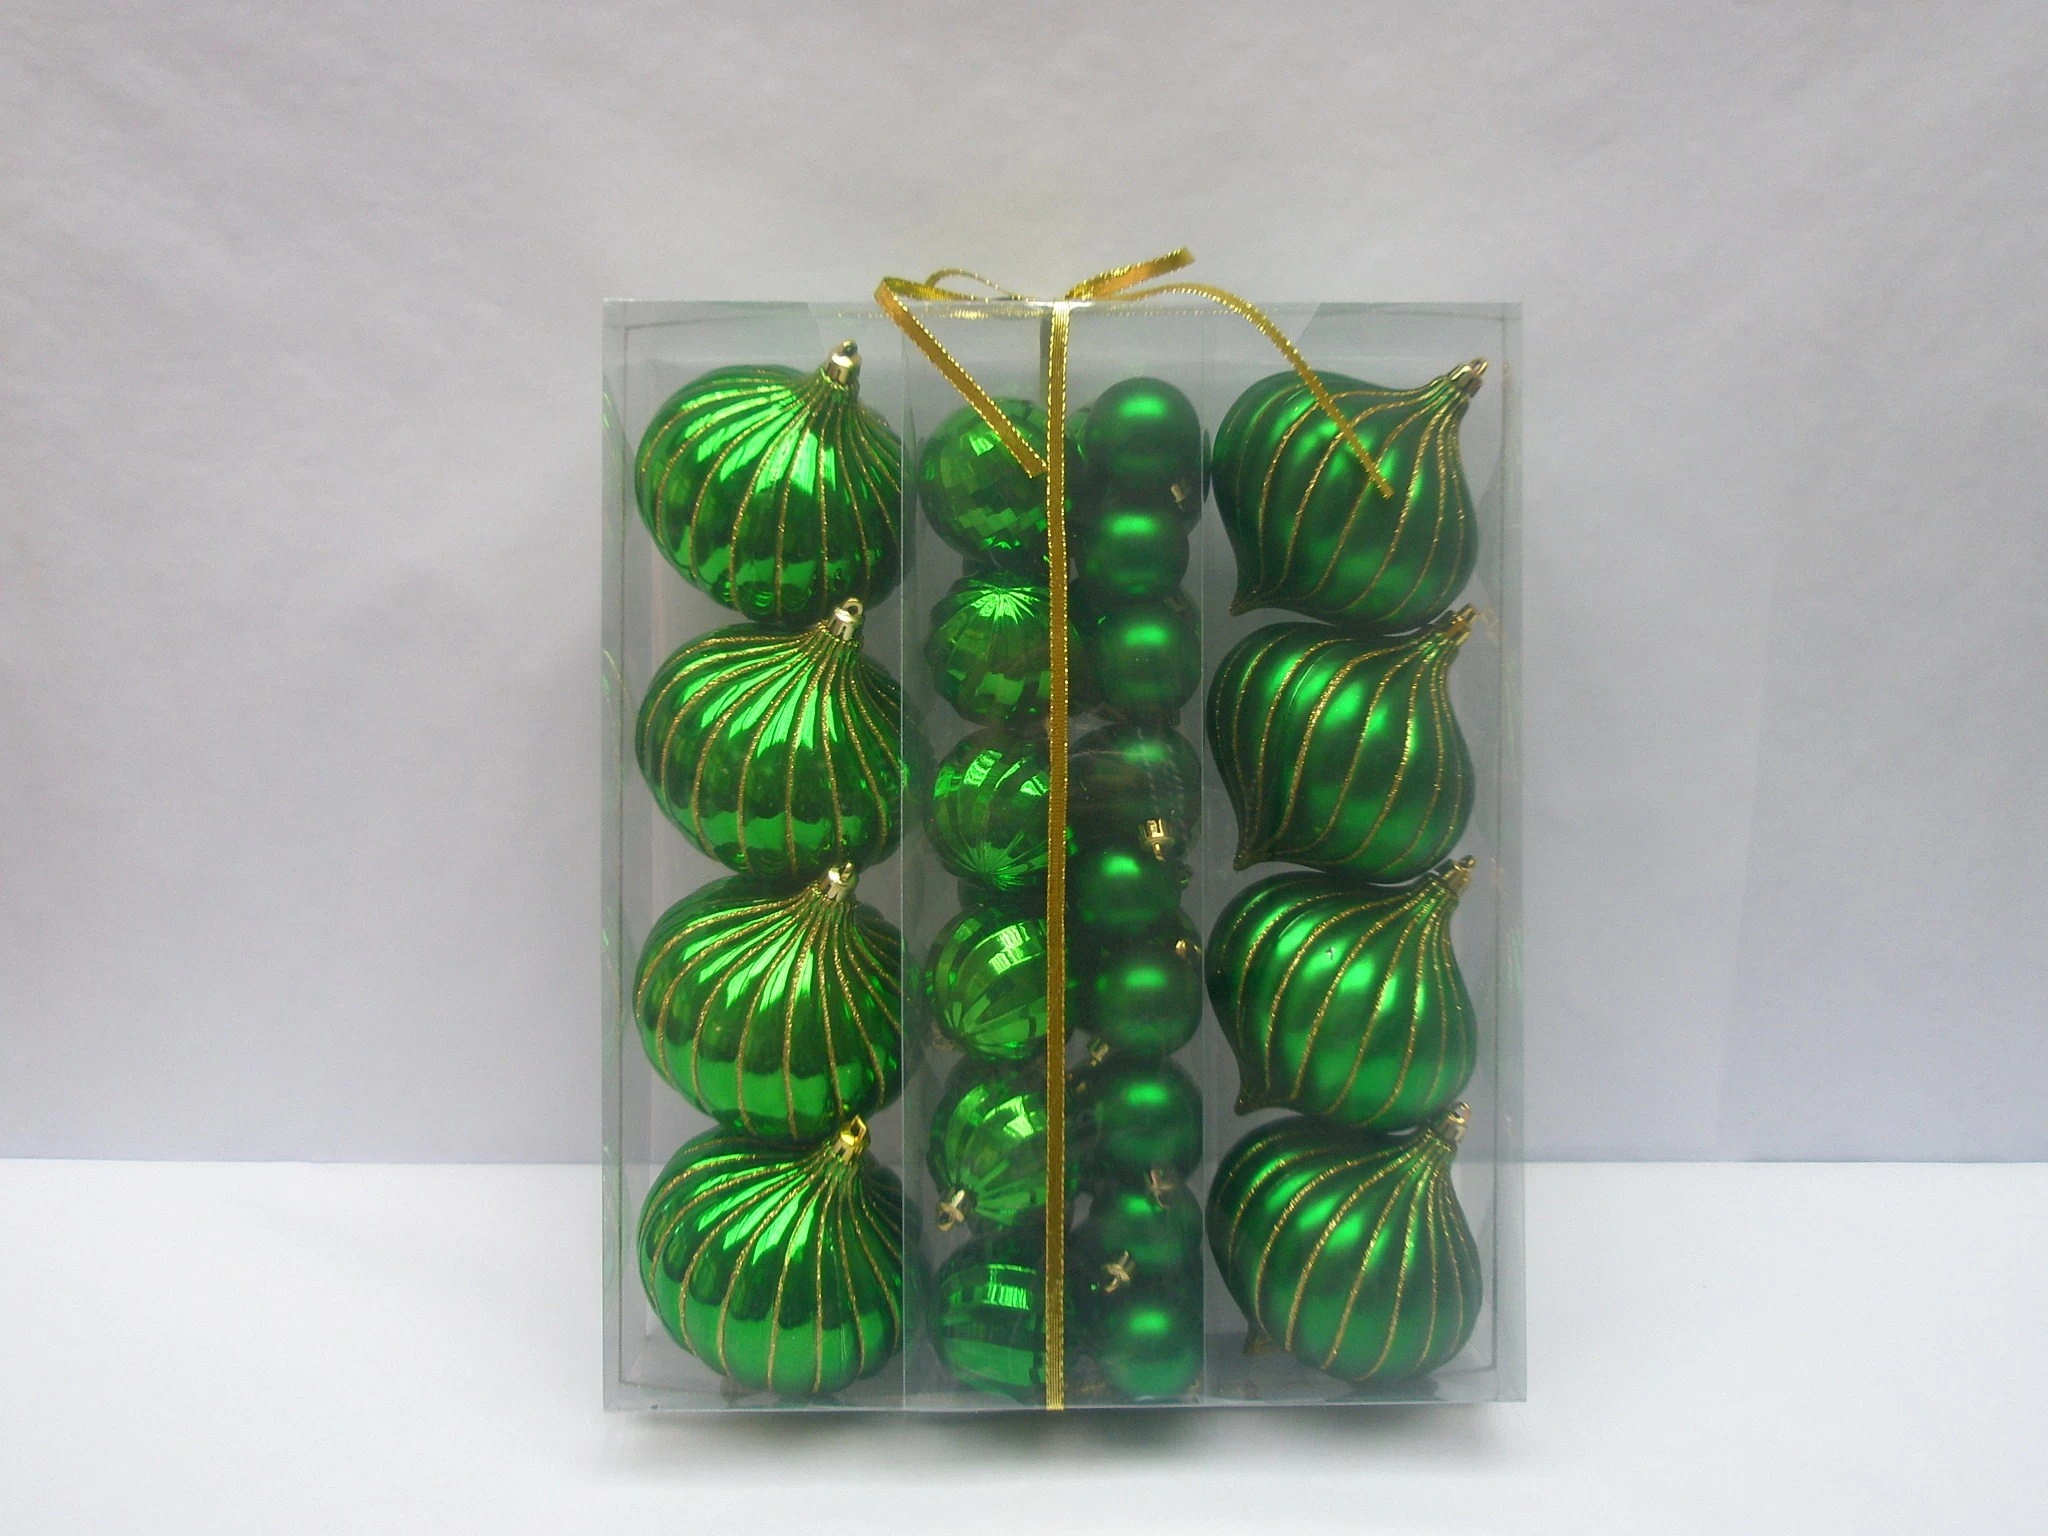 中国 优良的品质塑料圣诞树球装饰 制造商